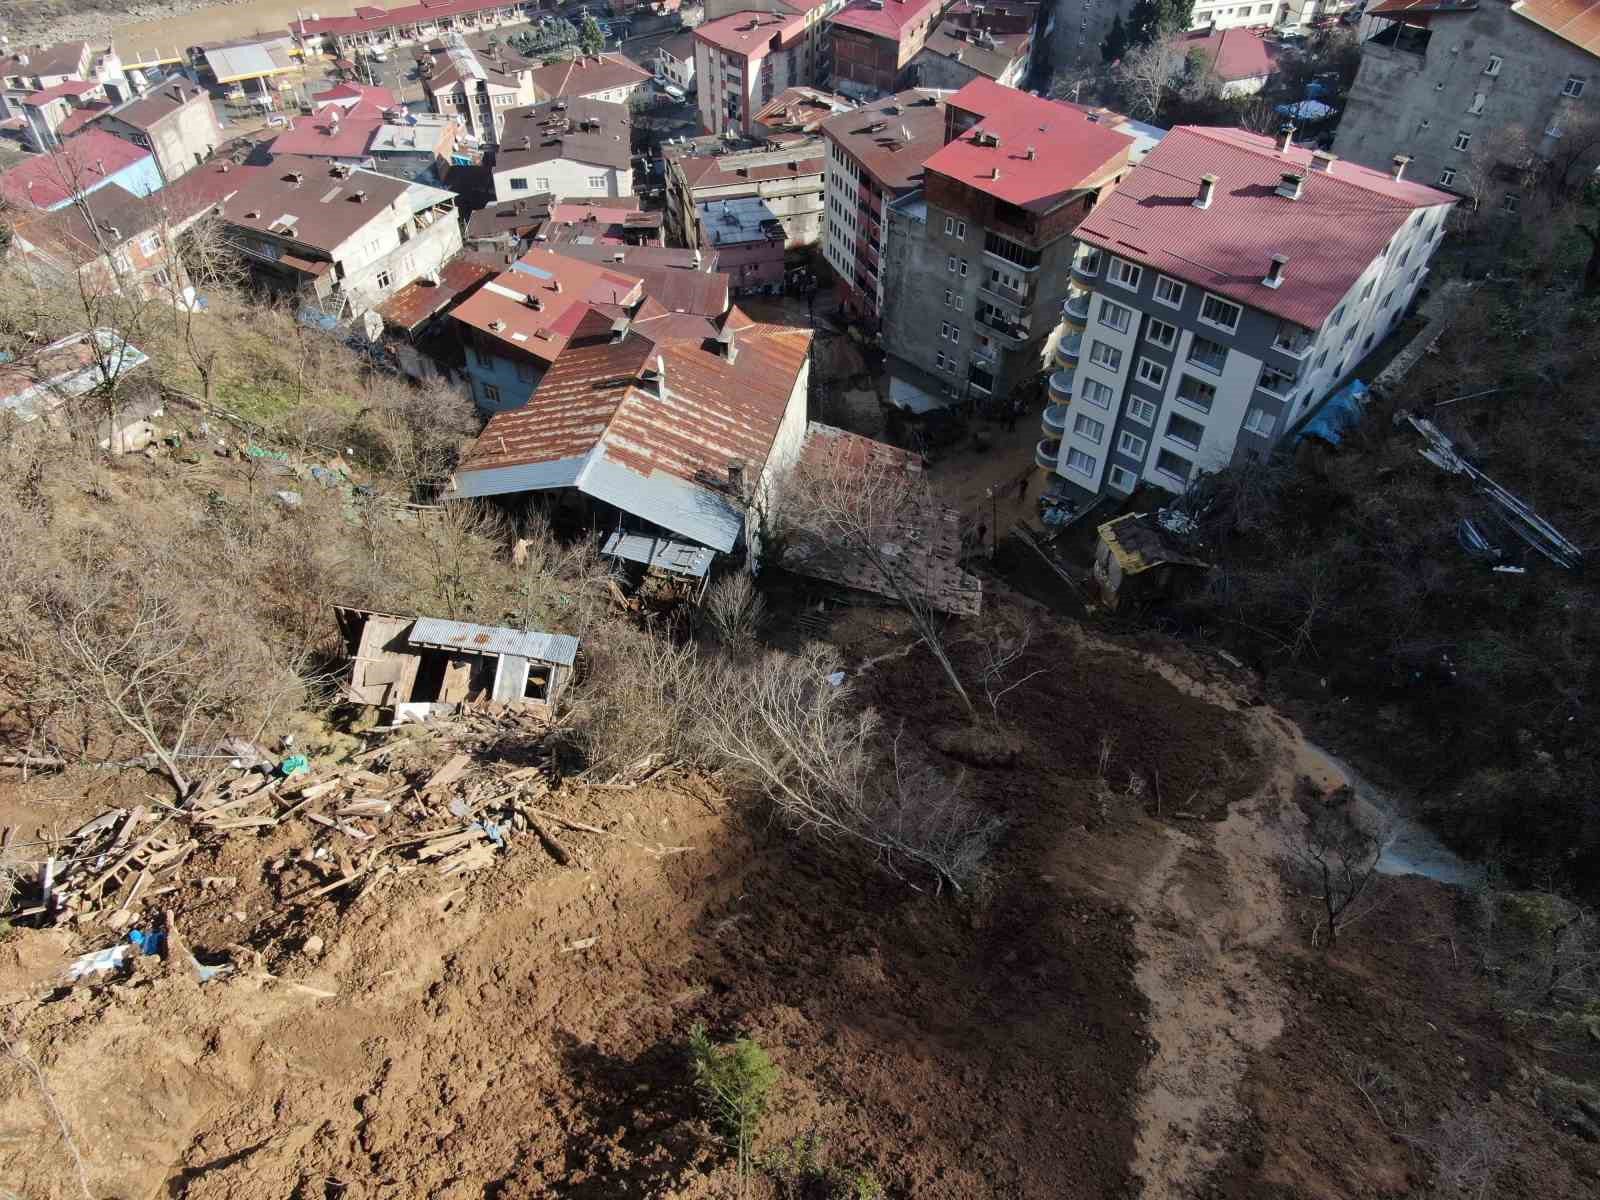 artvinde yamactan kopan topraklar evlerin icerisine doldu 10 bina zarar gordu 4 SEDLD5HC